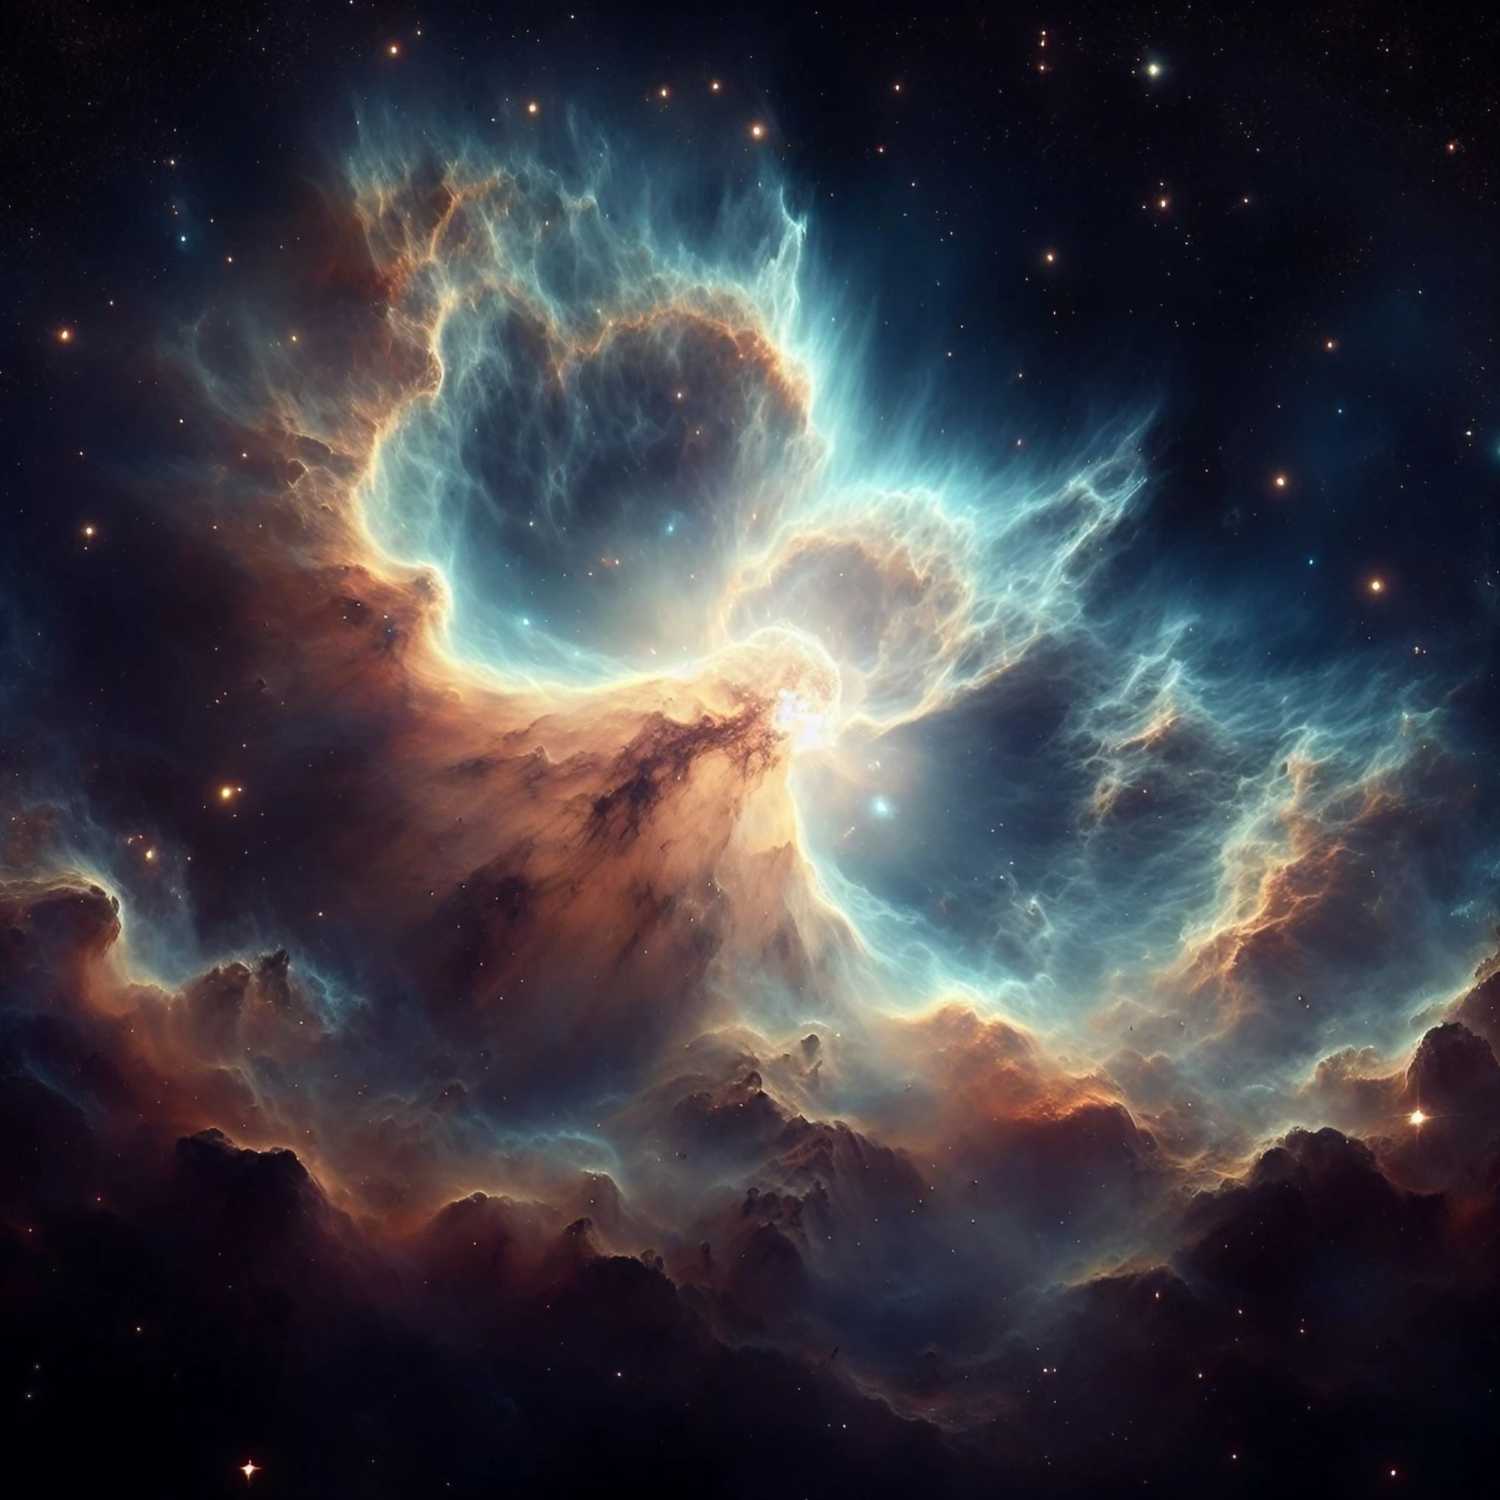 46: Planetary nebula